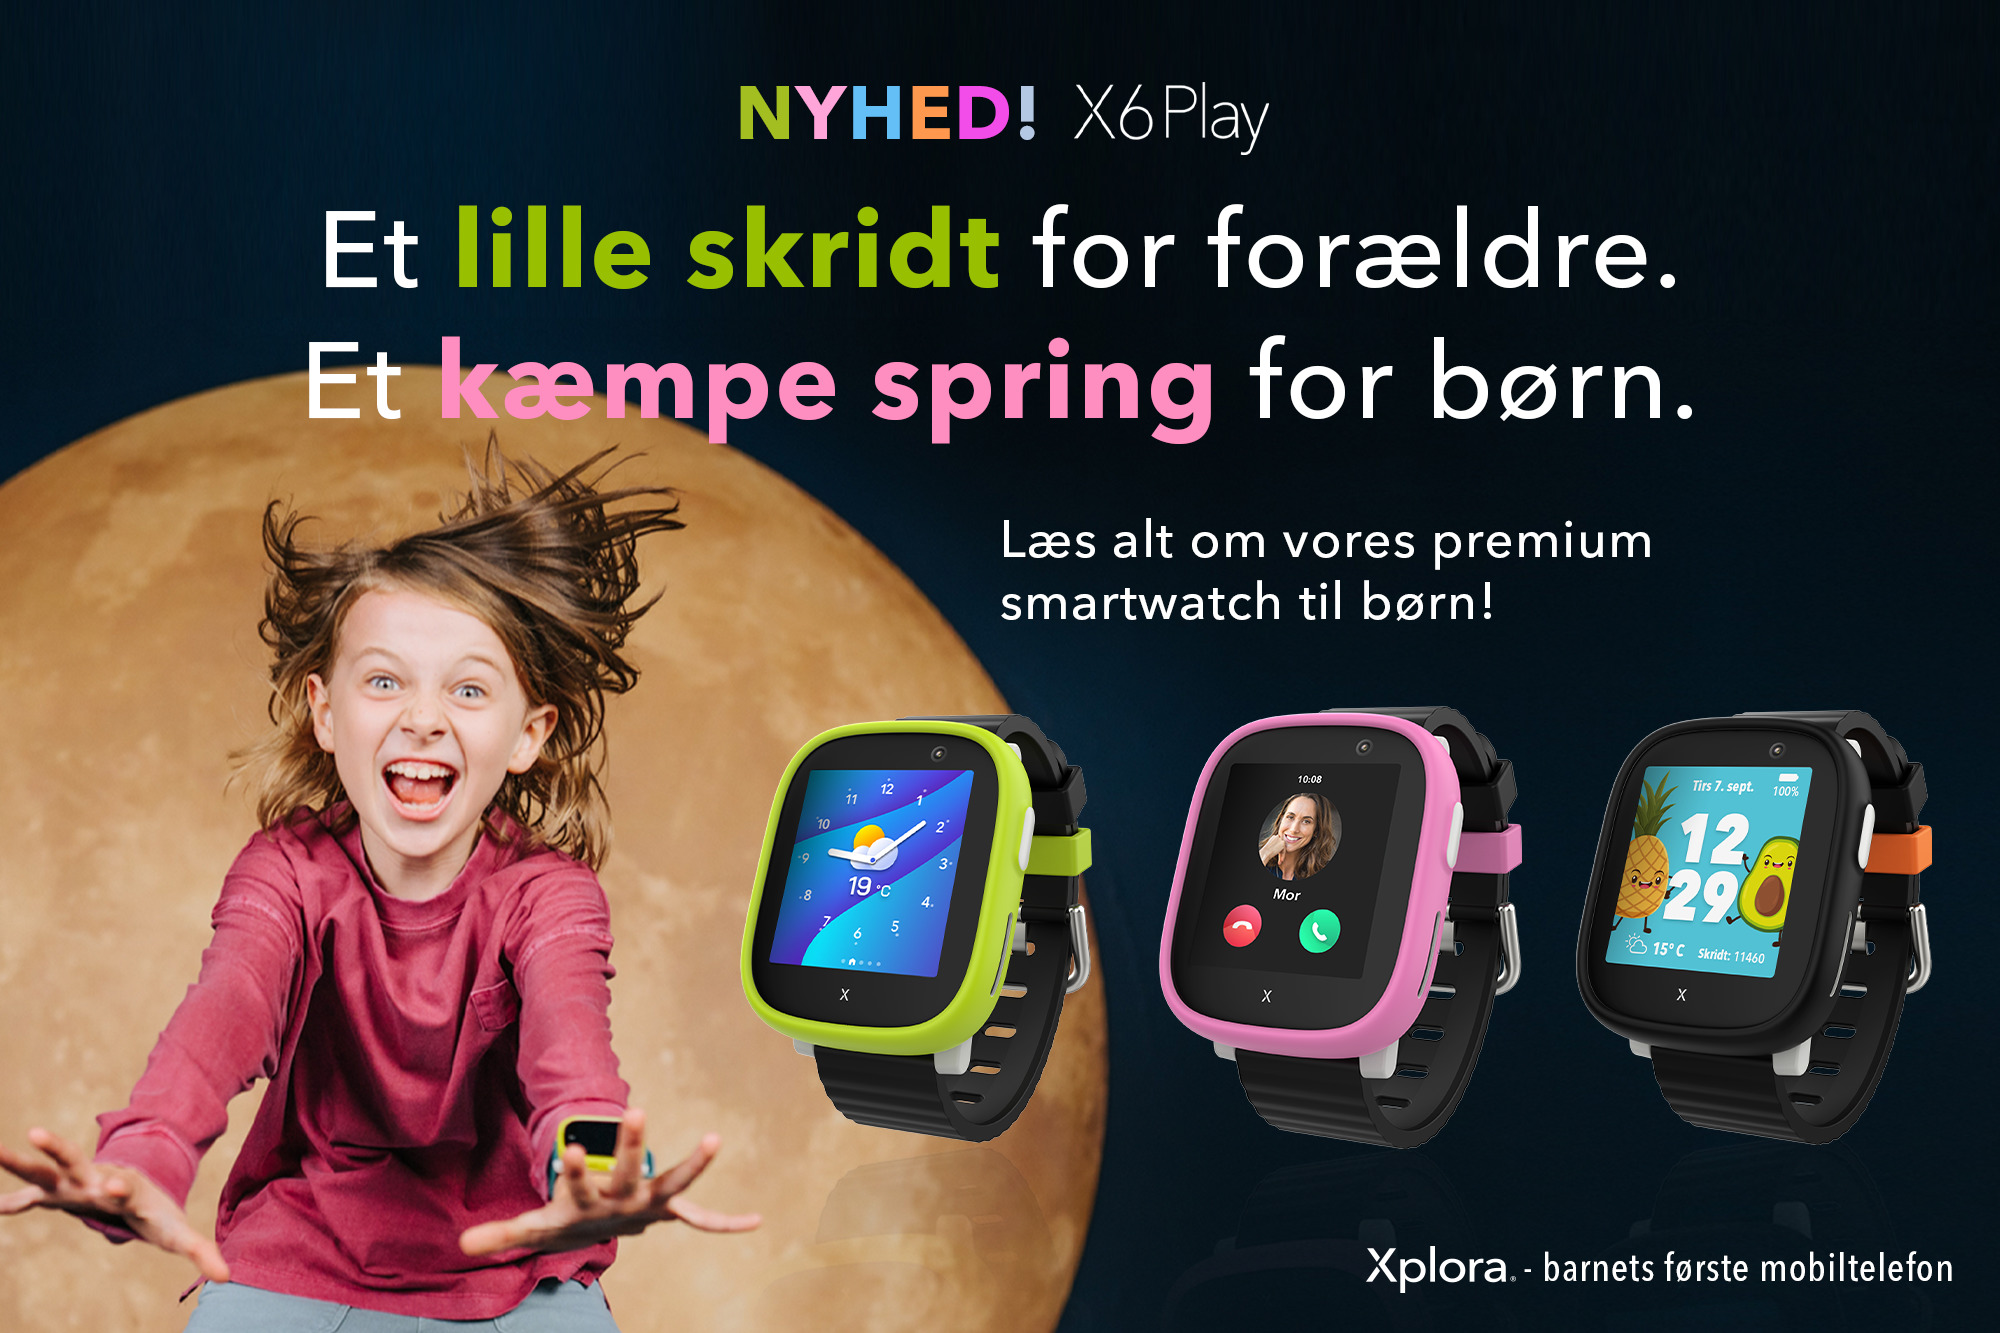 NYHED! Xplora lancerer nyt premium smartwatch til børn